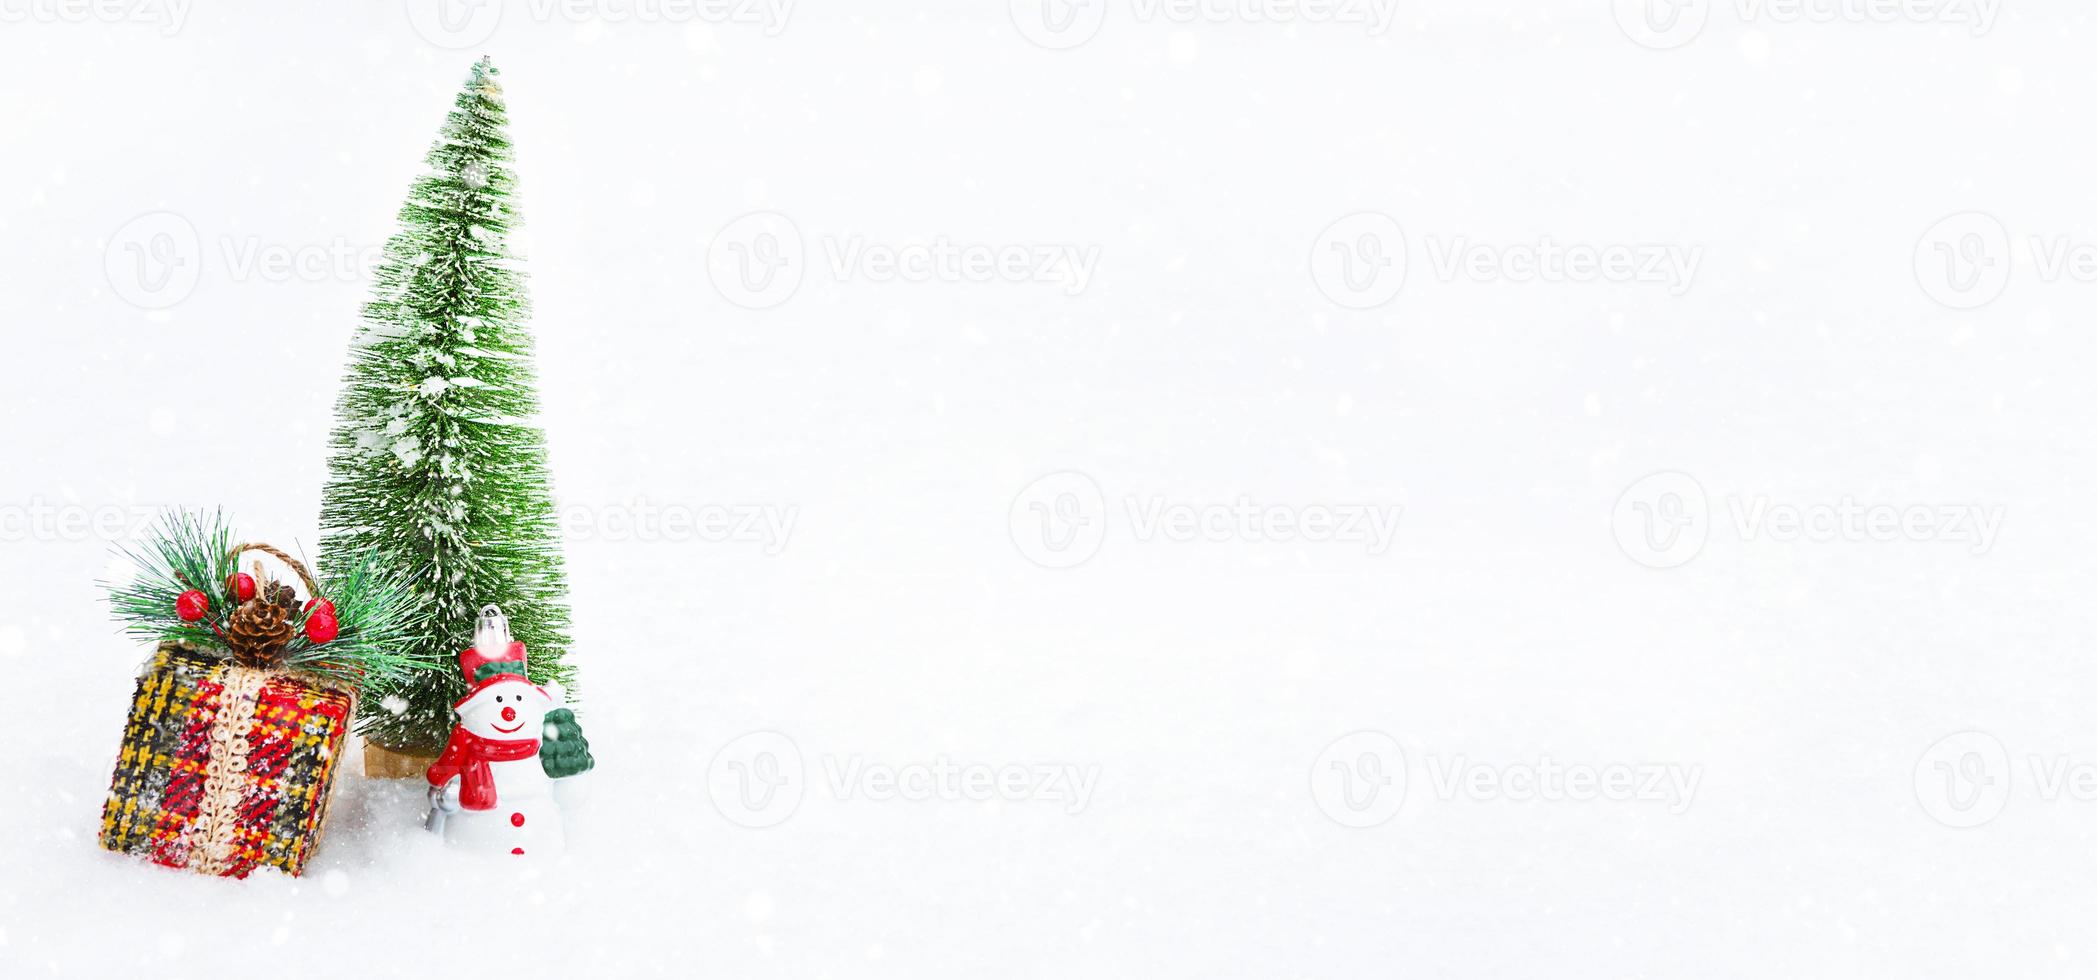 un sapin de noël, une boîte-cadeau et un bonhomme de neige jouet sur de la neige naturelle blanche dans une chute de neige. décoration pour le nouvel an et noël, carte de voeux avec fond photo